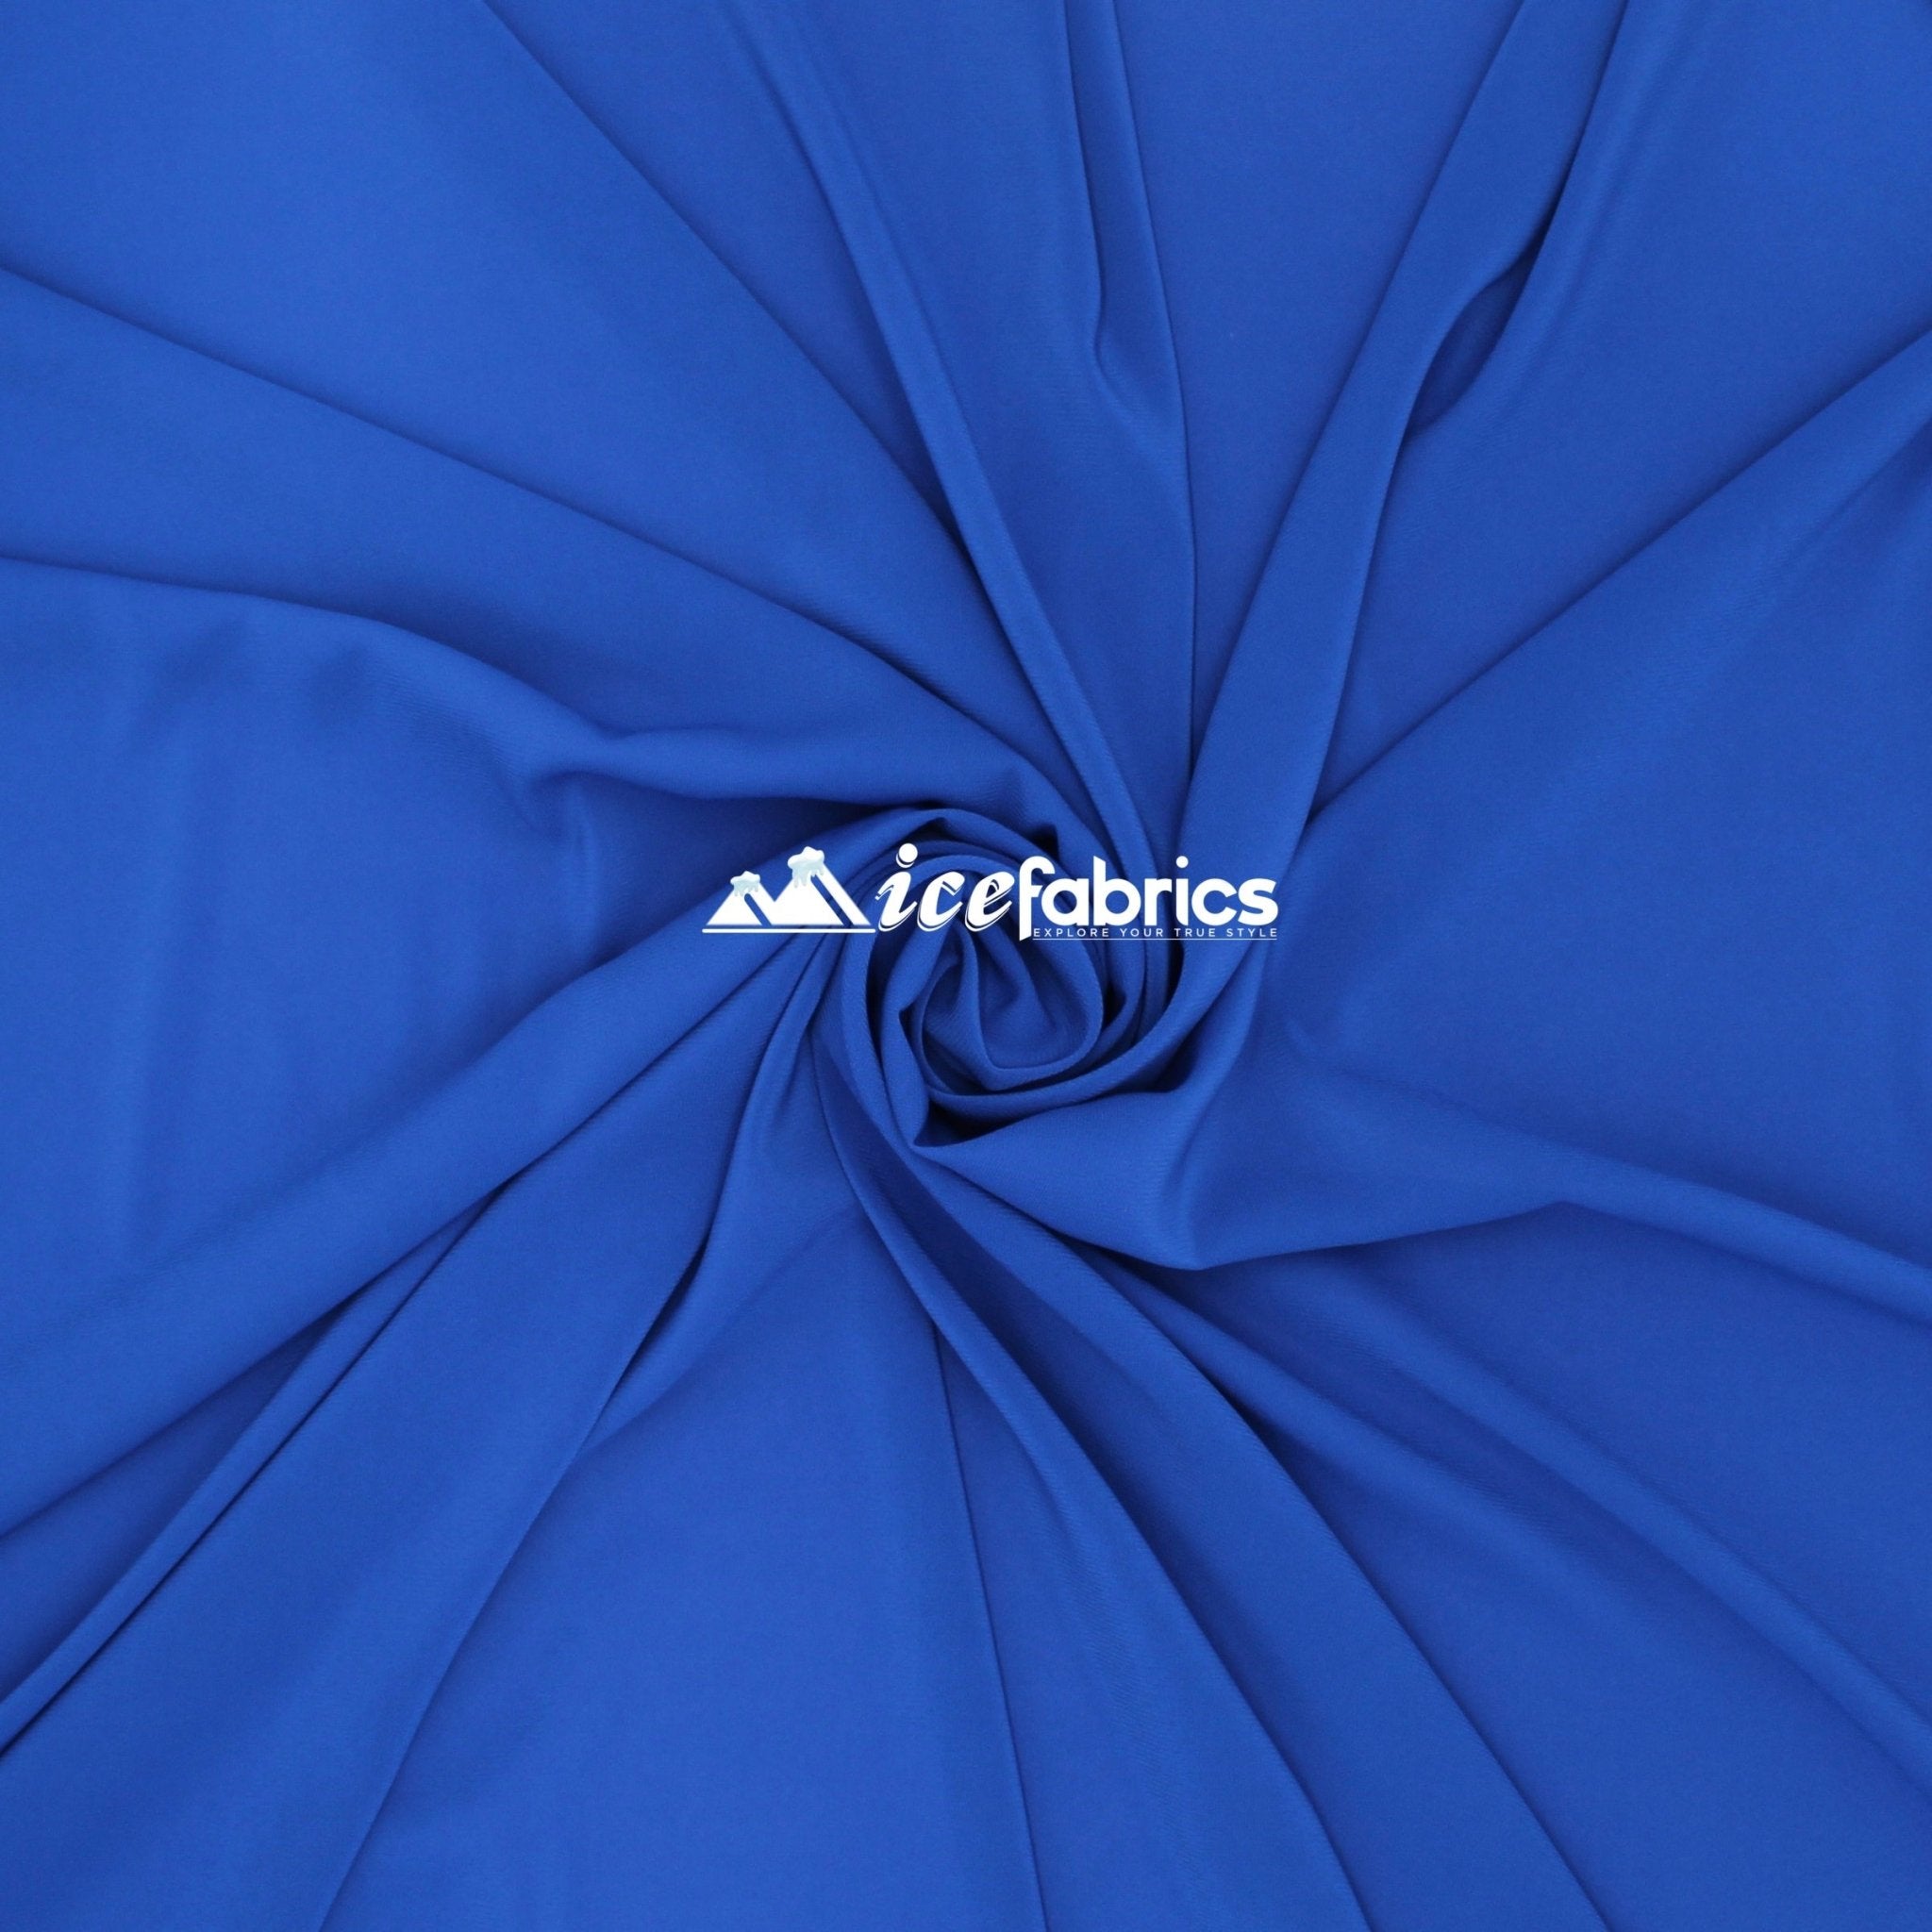 Silk Fabric Stretch Chiffon Fabric/ Spandex Fabric/ Royal BlueChiffon FabricICE FABRICSICE FABRICSRoyal BluePer YardSilk Fabric Stretch Chiffon Fabric/ Spandex Fabric/ Royal Blue ICE FABRICS